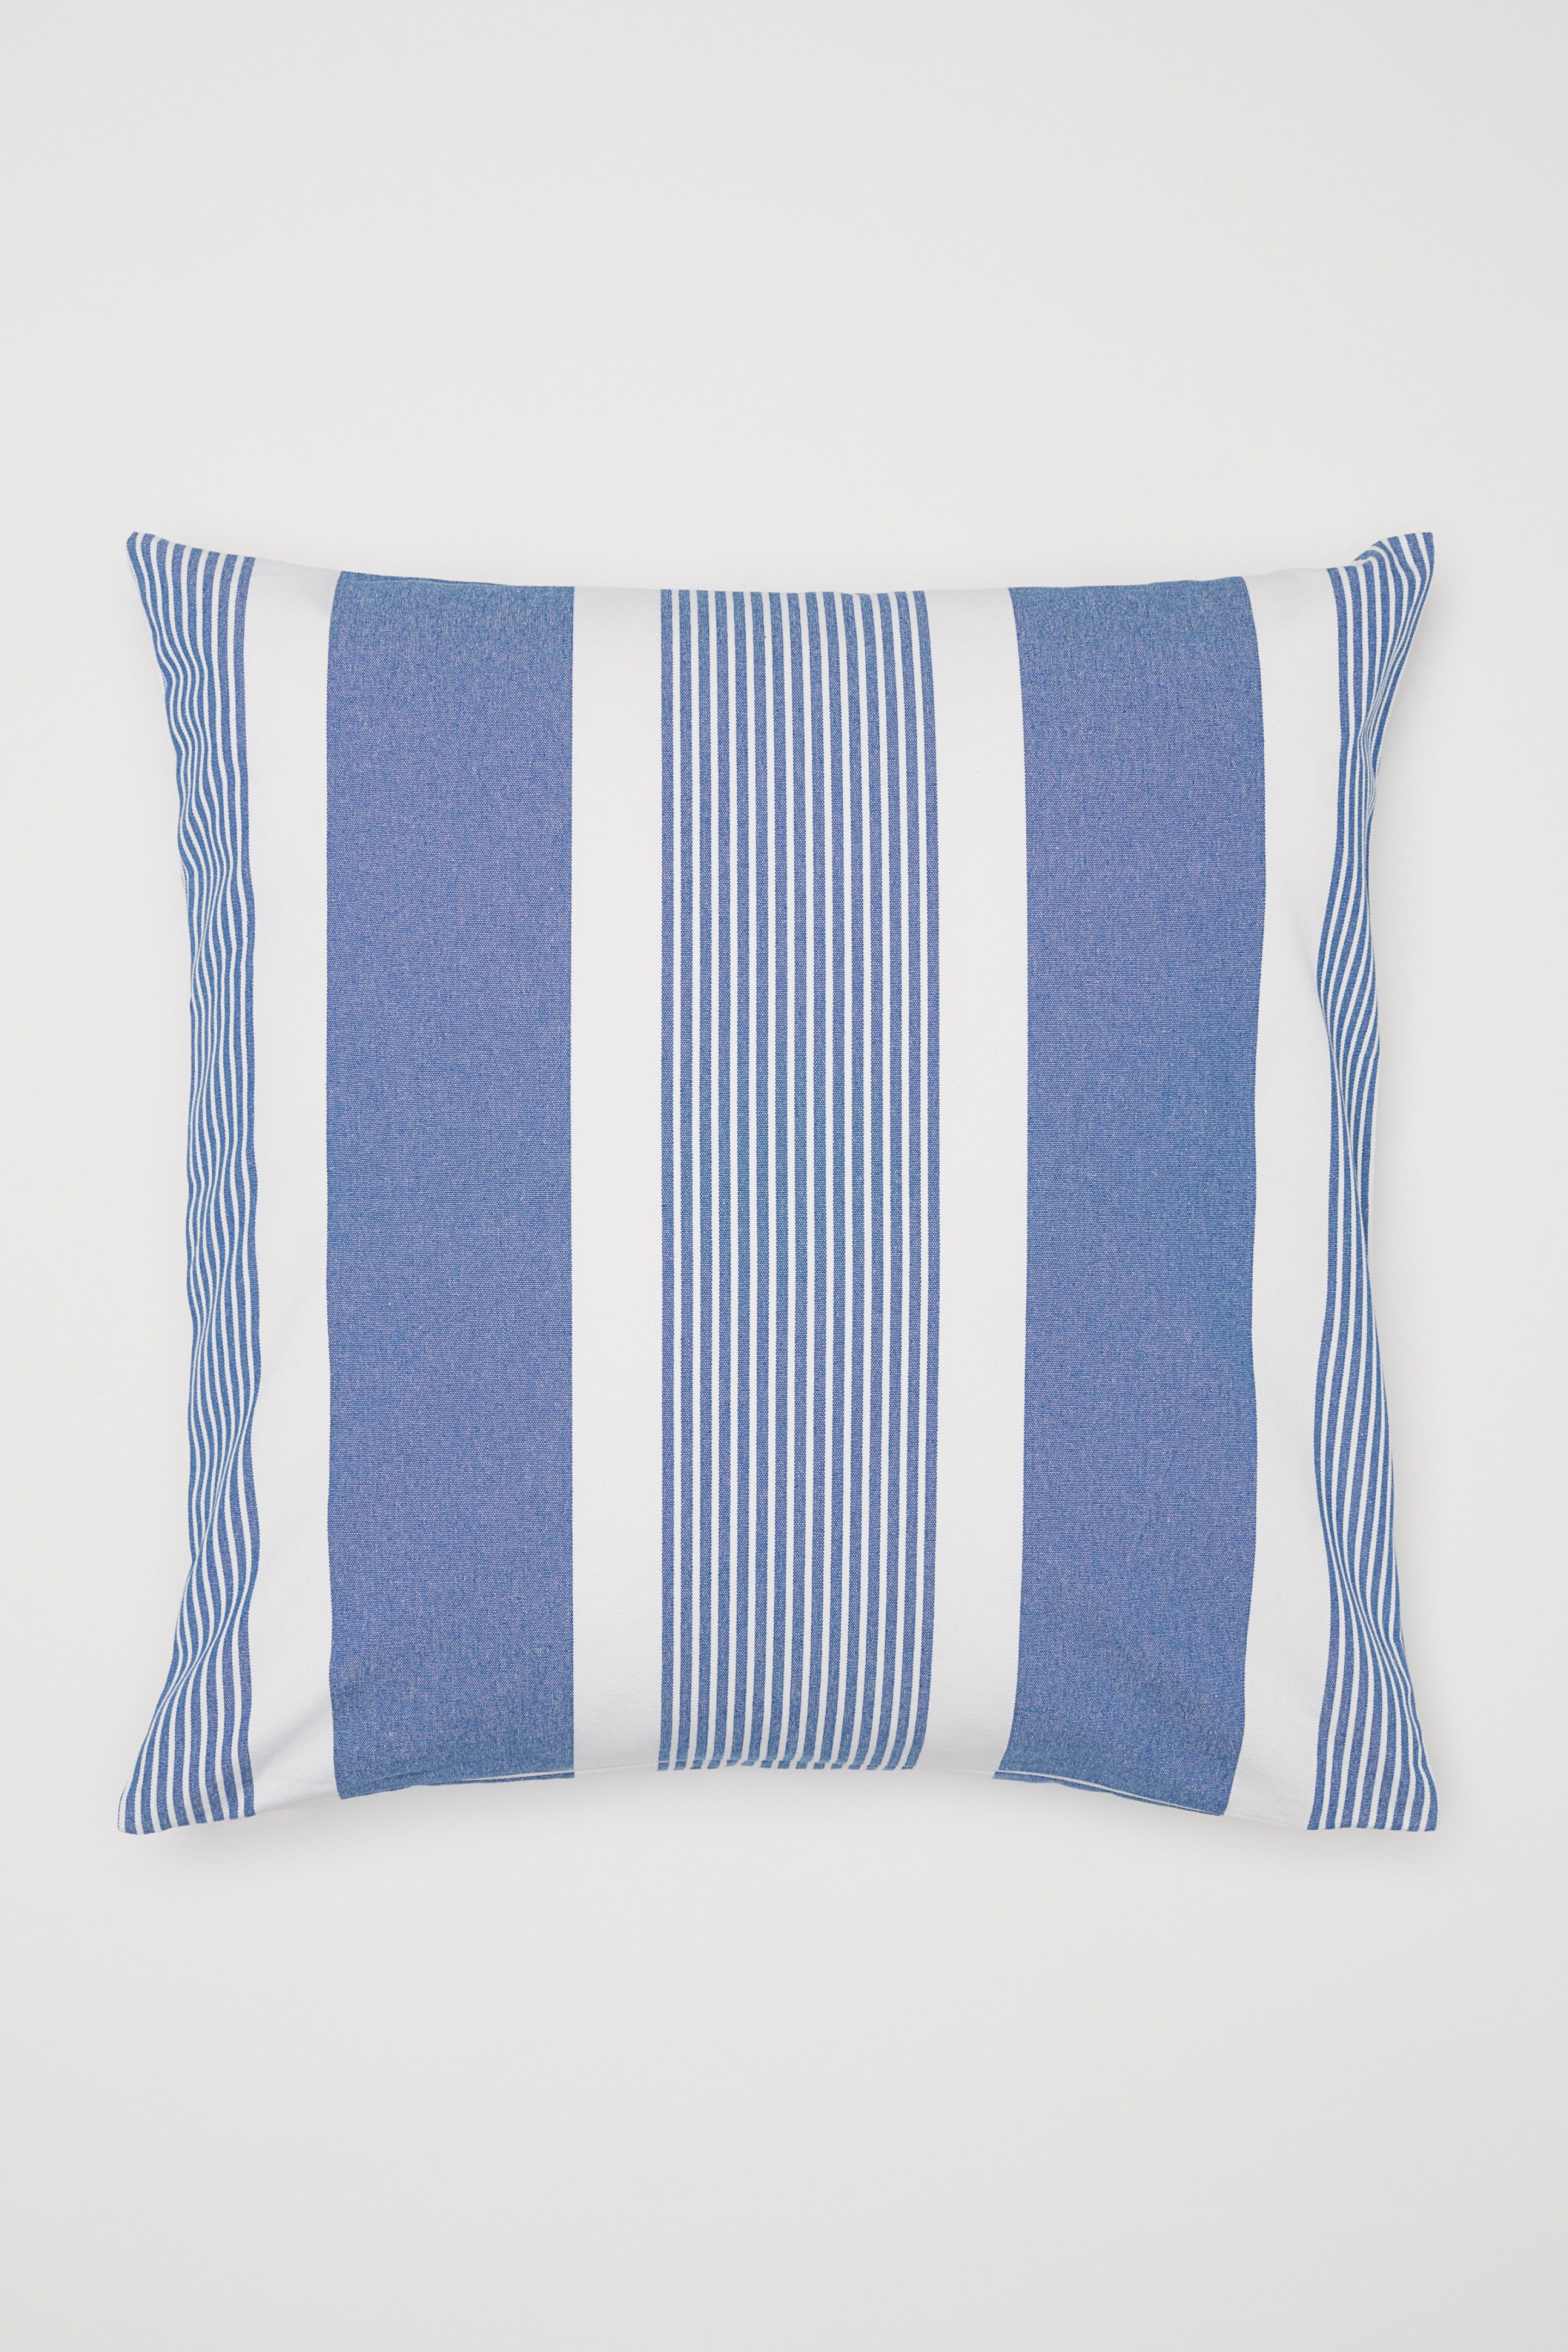 cushions blue grey